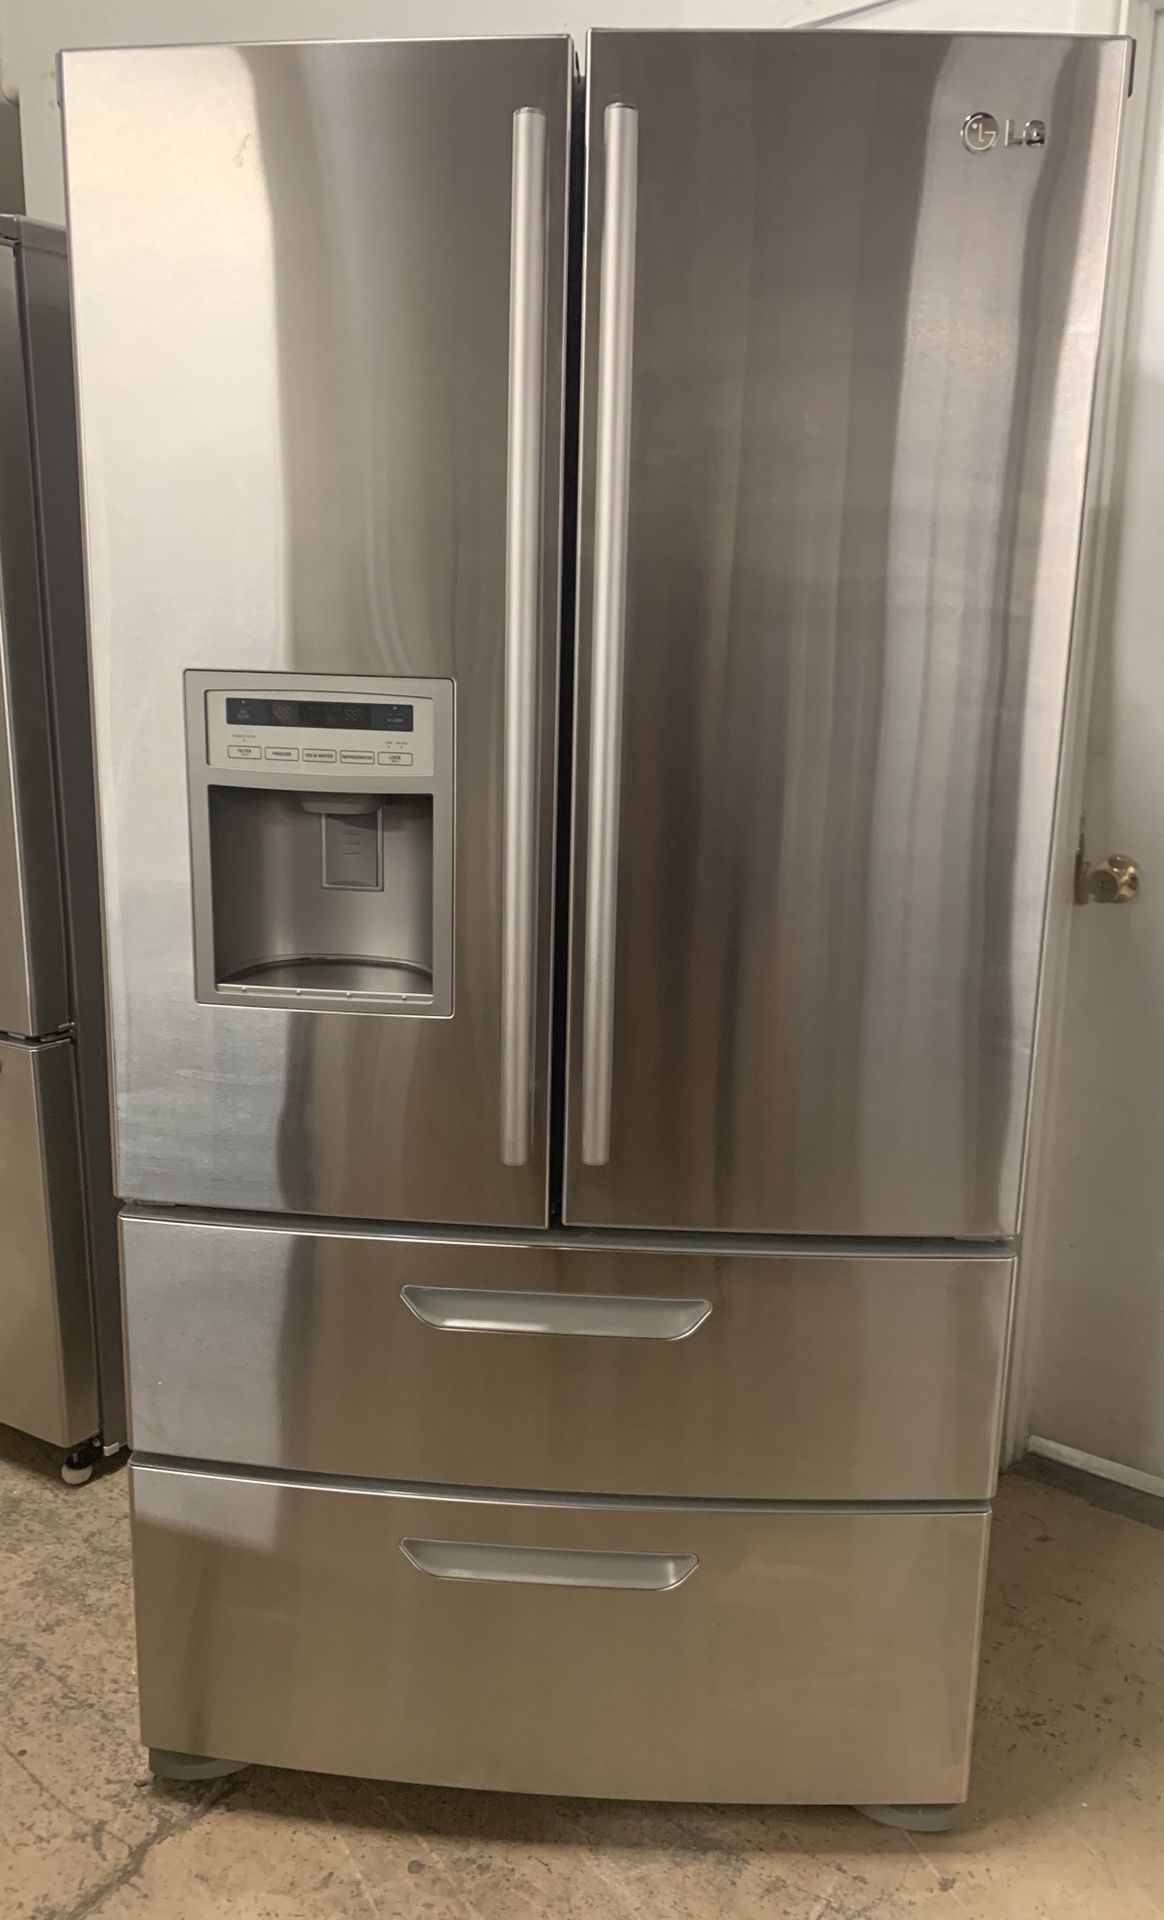 LG 4 Door French Door Refrigerator- 30 DAY WARRANTY INCLUDED!